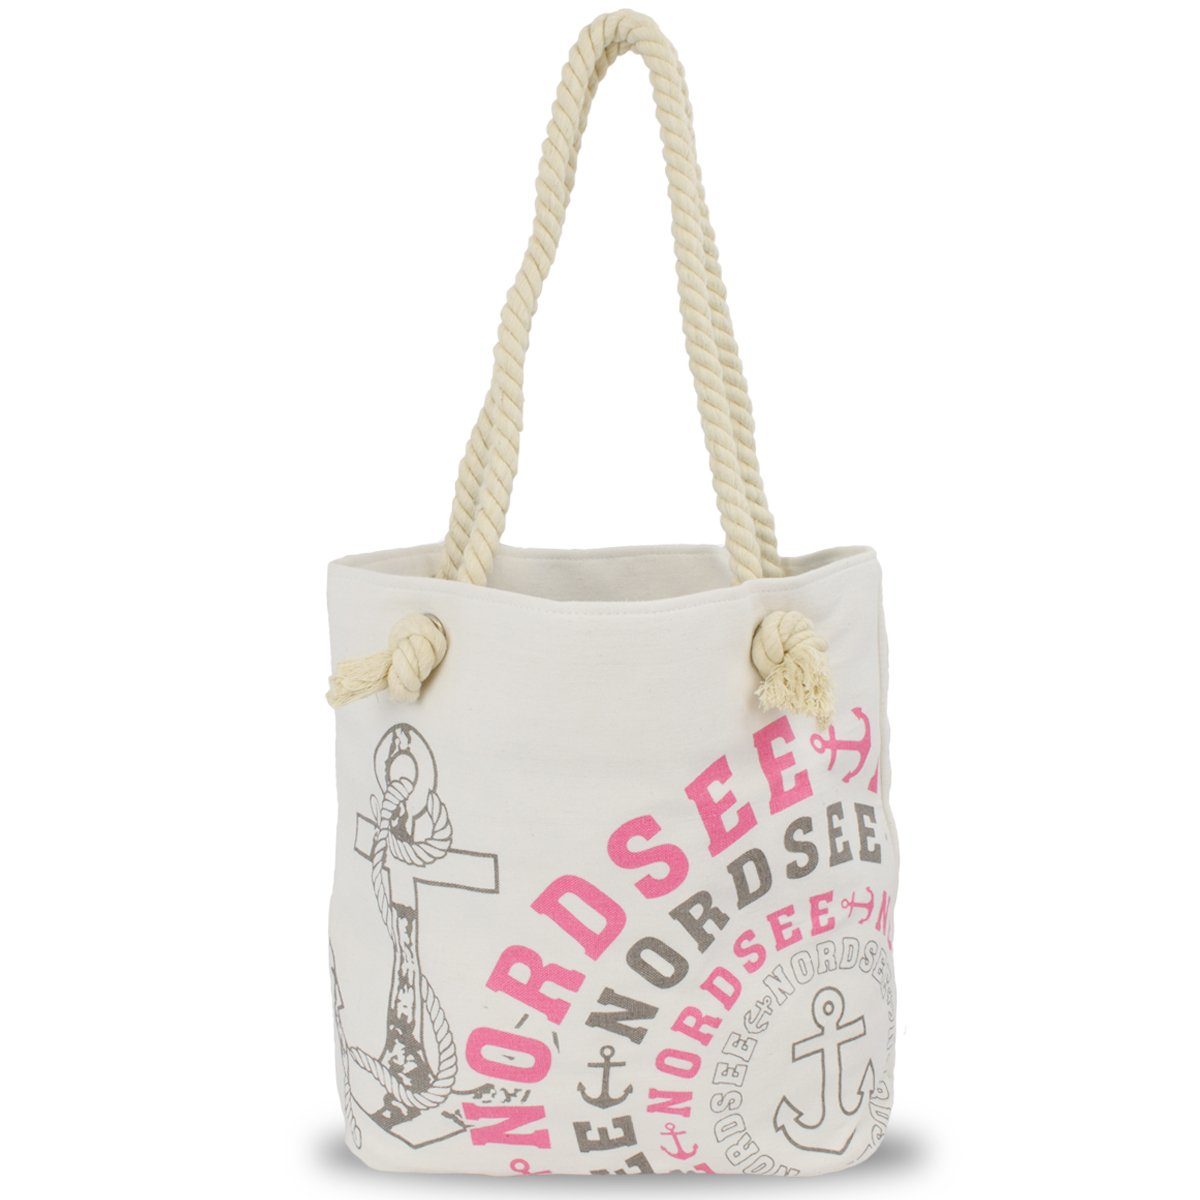 Sonia Originelli Umhängetasche City Shopper "NORDSEE" Einkaufstasche Tasche Bag, kleine Innentasche mit Reißverschluss grau-rosa